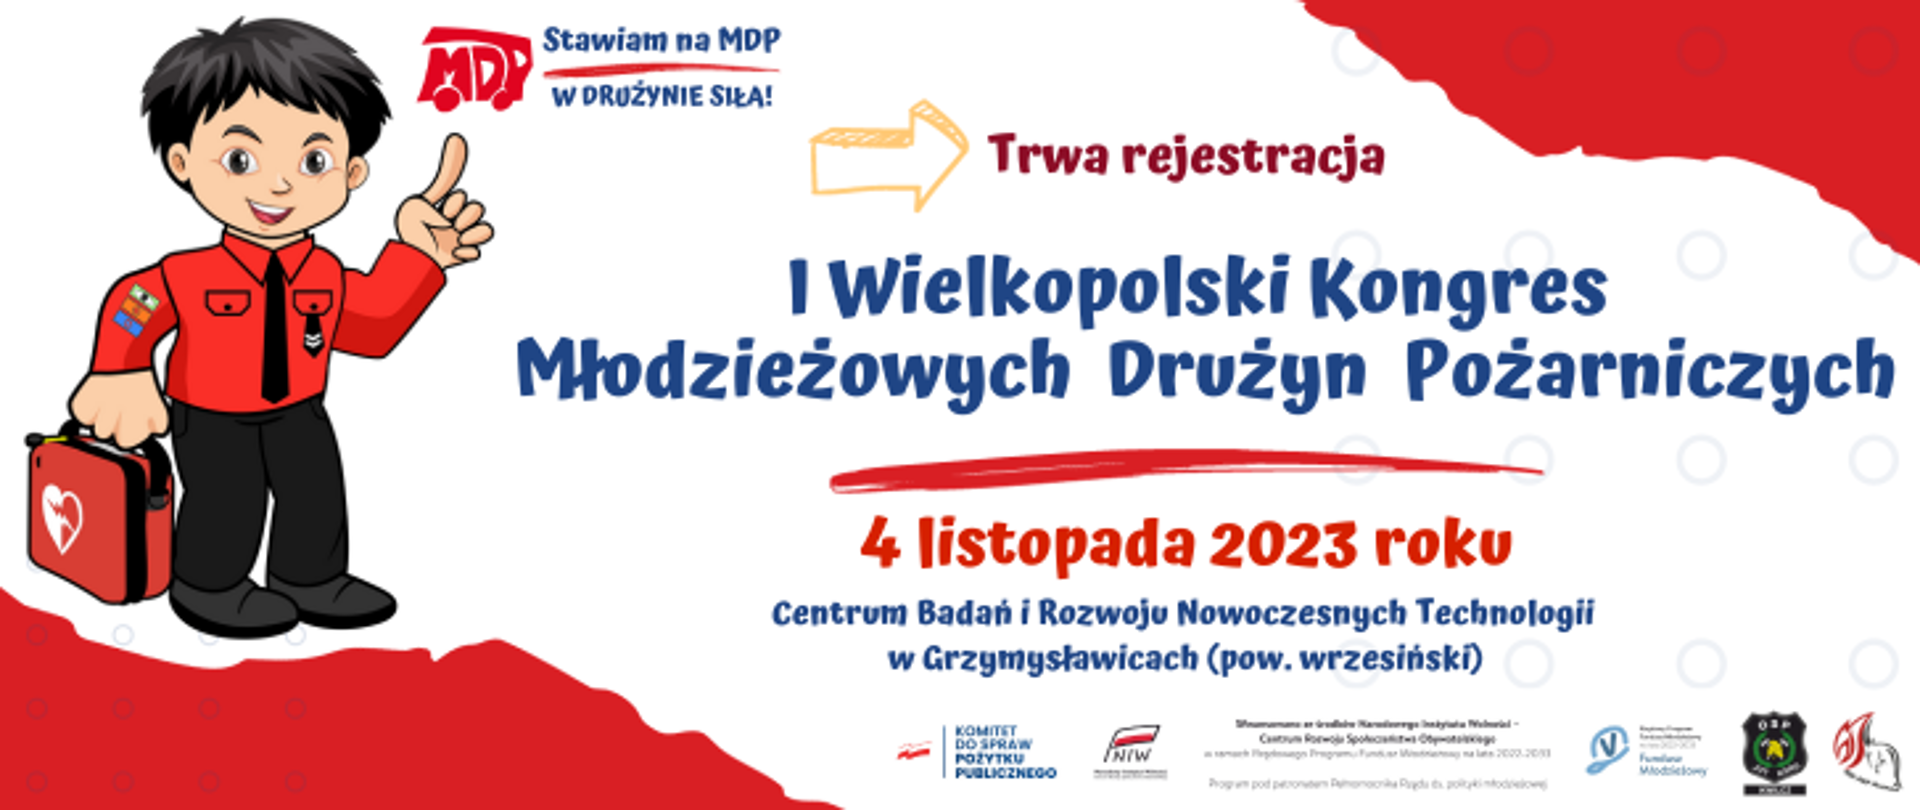 Grafika przedstawia zaproszenie do zarejestrowania się na wydarzenie - I Wielkopolski Kongres MDP. Zostaje wskazany termin i sposób rejestracji, logotypy organizatorów. 